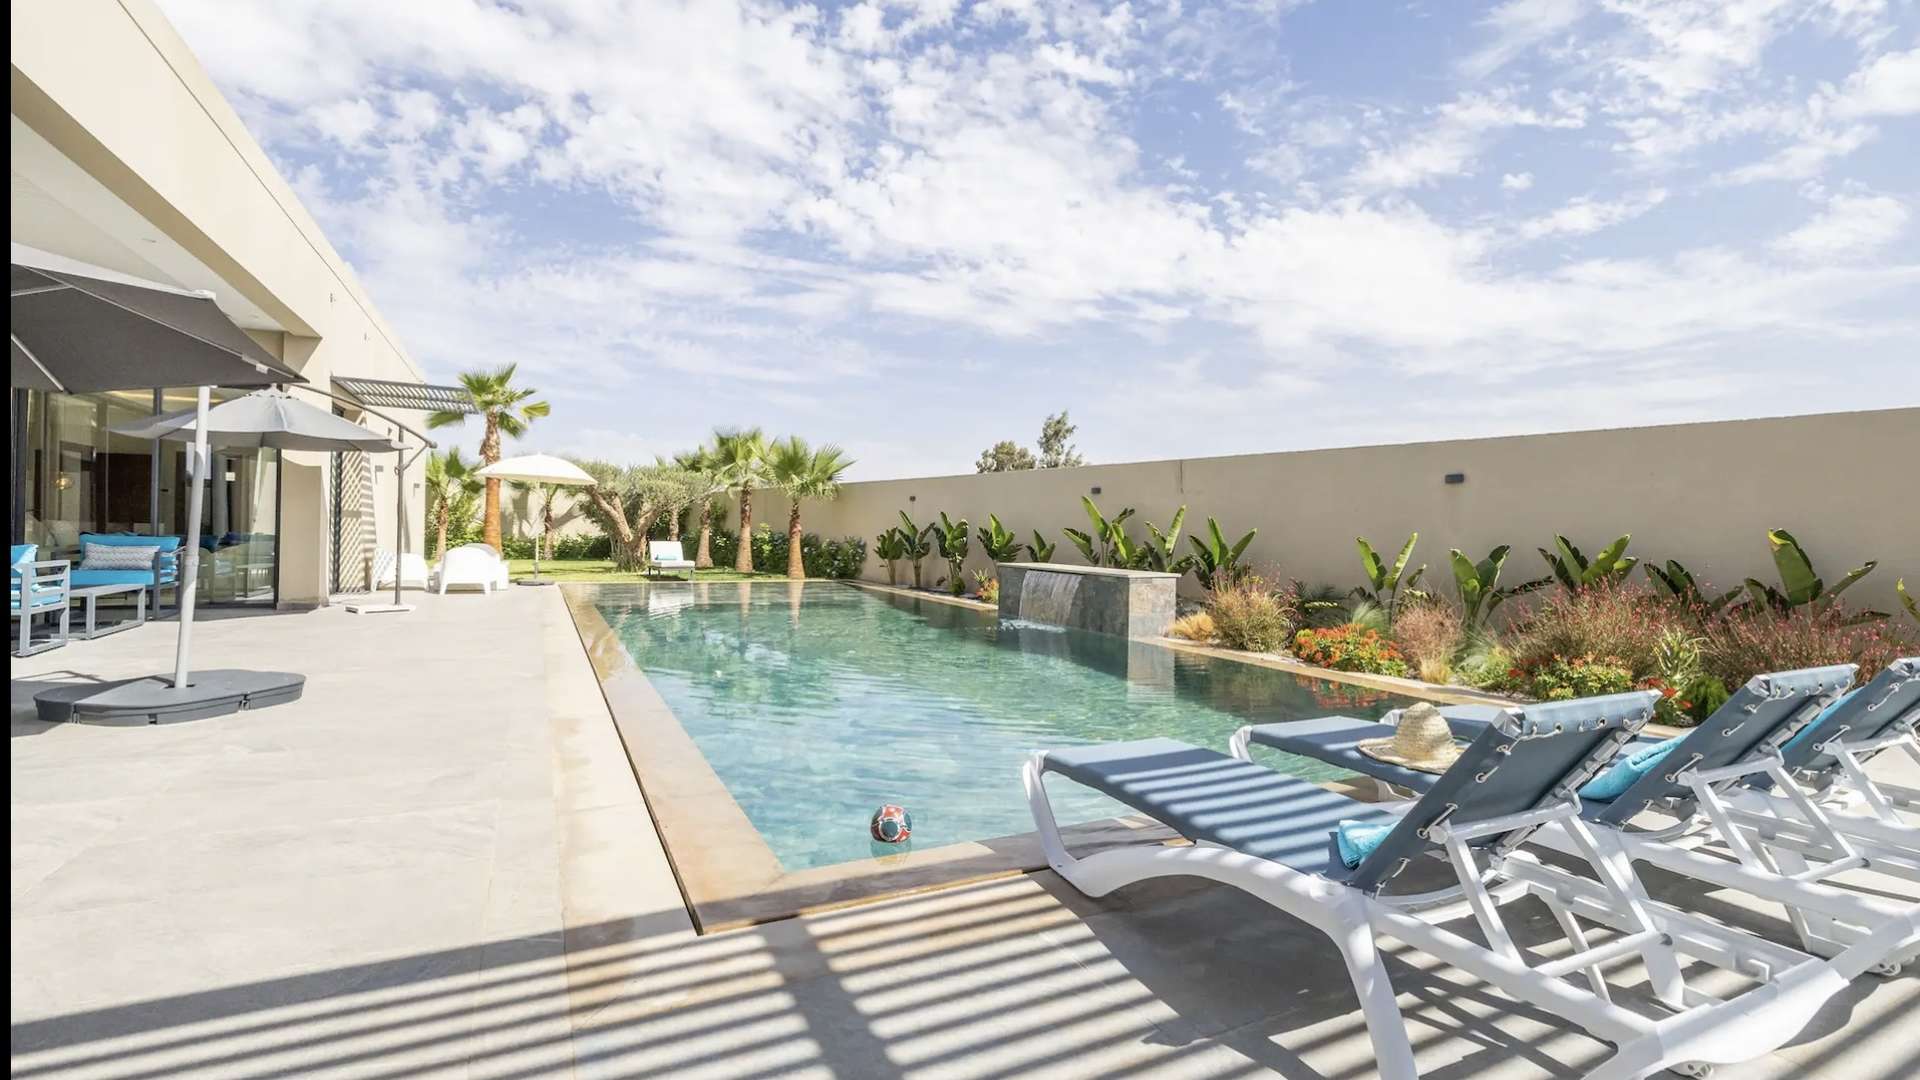 Location de vacances,Villa,Villa neuve 3ch avec piscine privée ,Marrakech,Route d'Ouarzazate